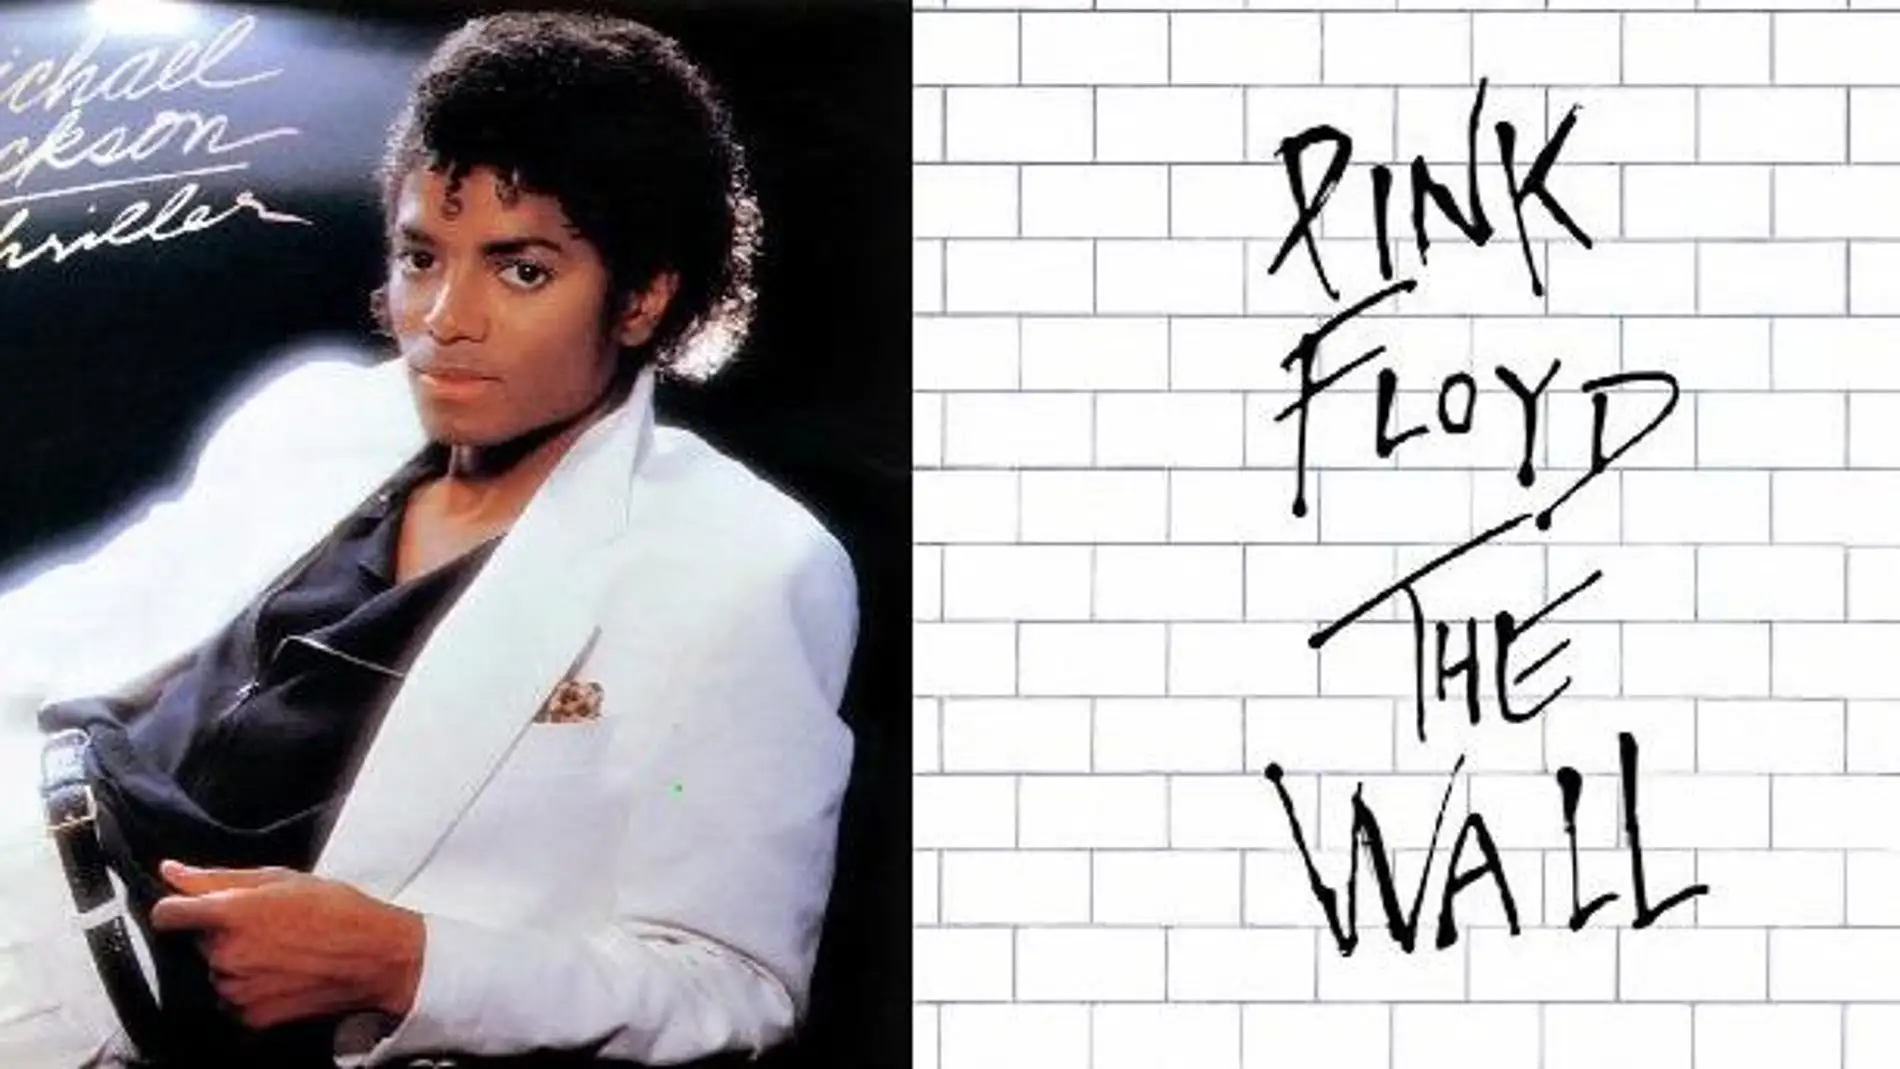 Hoy 30 de noviembre dos discos memorables salían al mercado Thriller de Michael Jackson y The Wall de Pink Floyd    